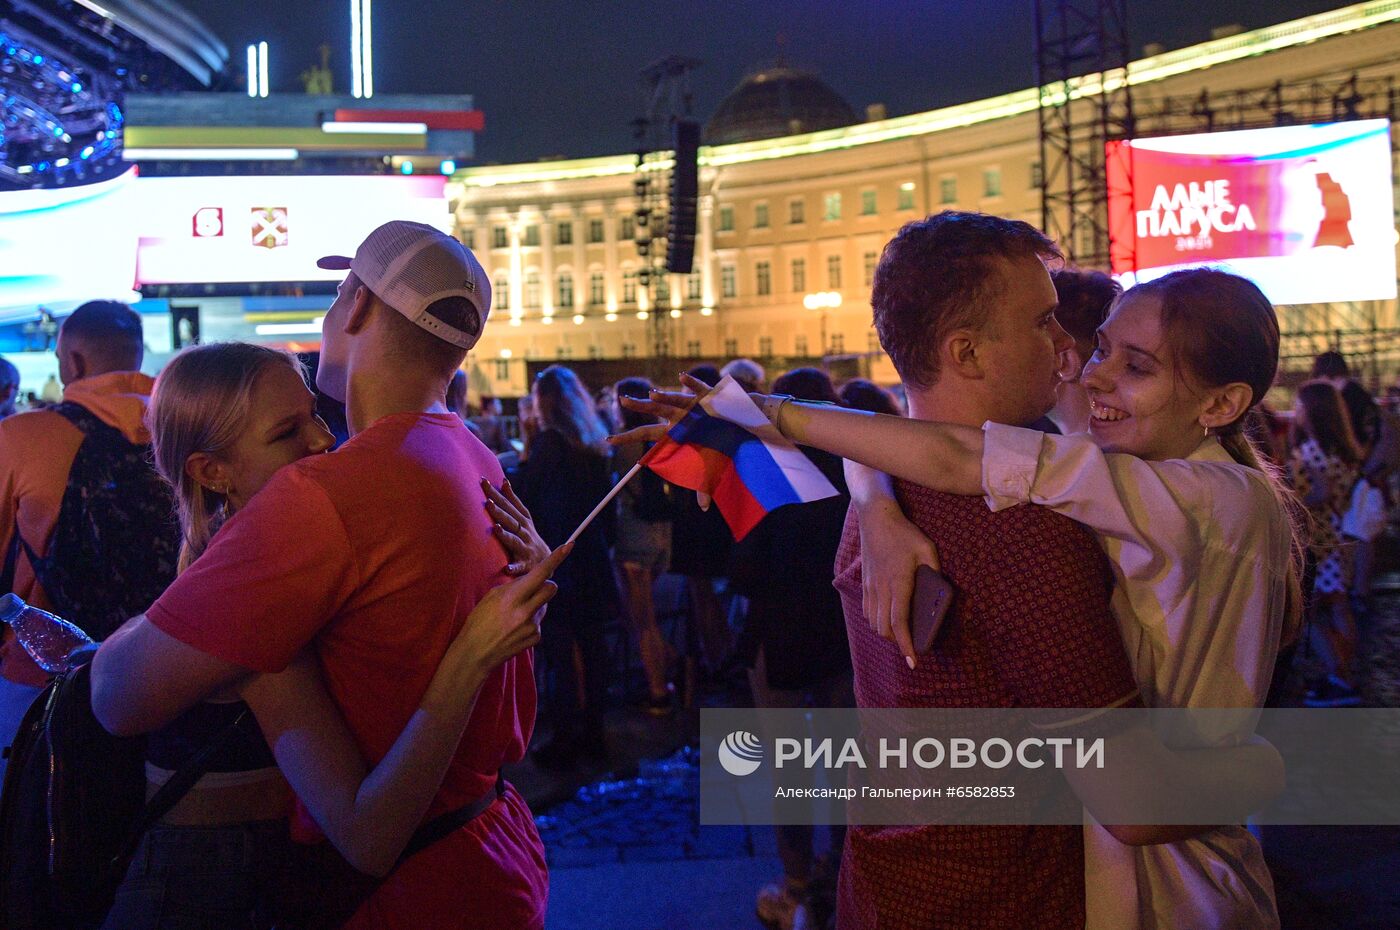 Праздник выпускников "Алые паруса" в Санкт-Петербурге